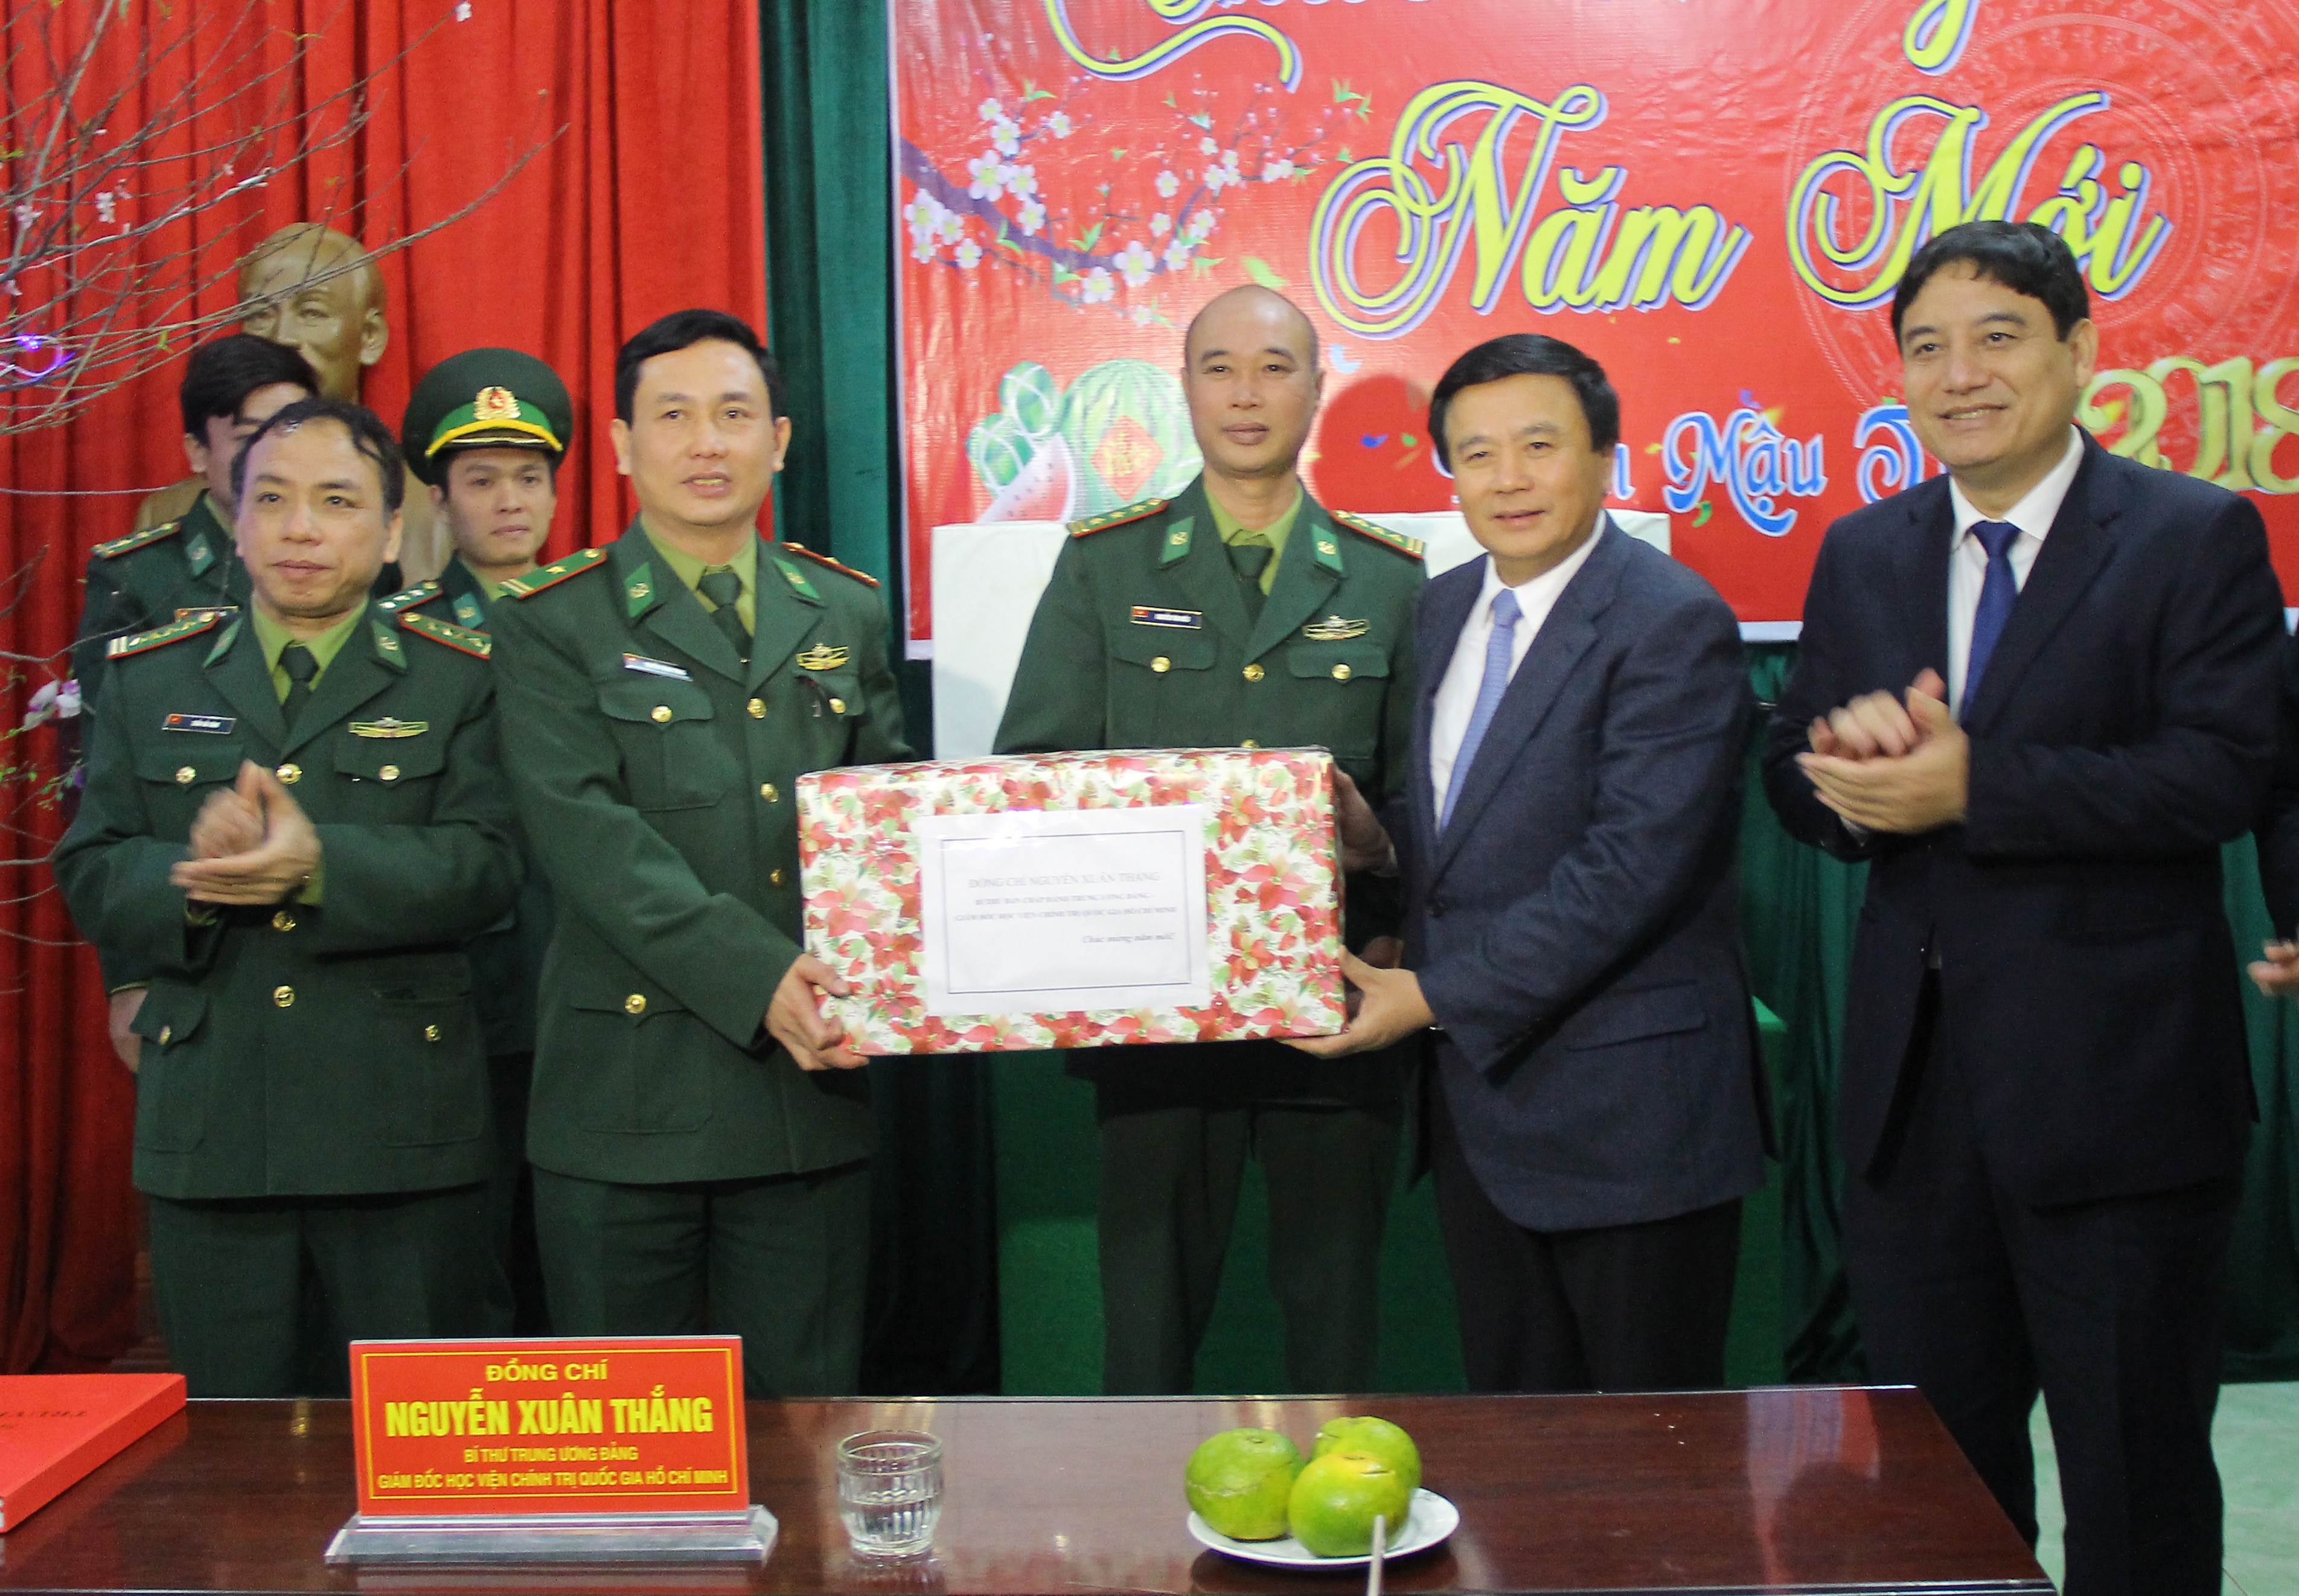 Đồng chí Nguyễn Xuân Thắng tặng quà Tết cho cán bộ, chiến sỹ đồn Biên phòng Cửa khẩu Thanh Thủy. Ảnh: Mai Hoa